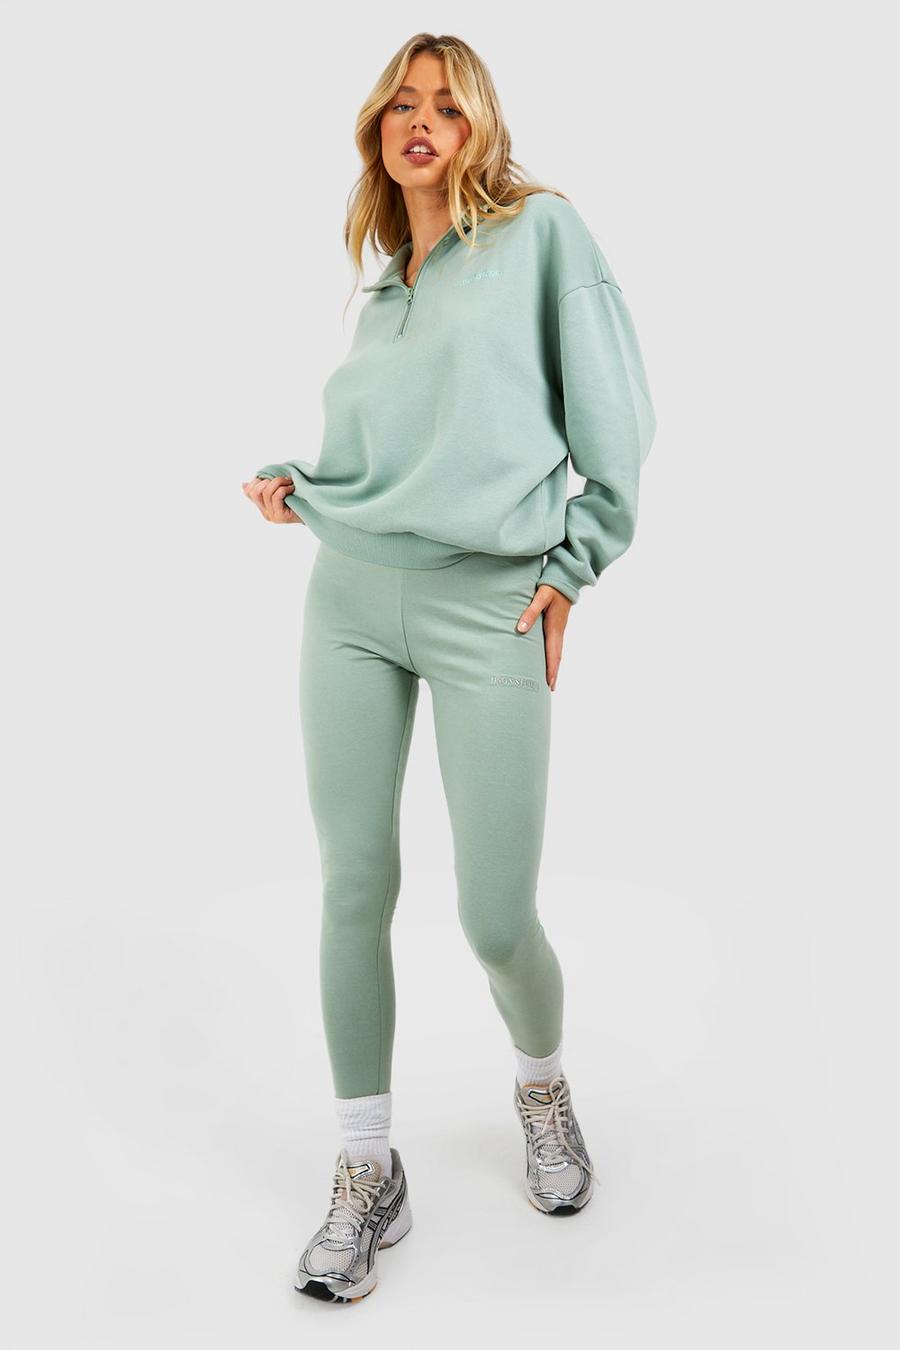 Sage green DSGN Studio Half Zip Sweatshirt And Legging Set